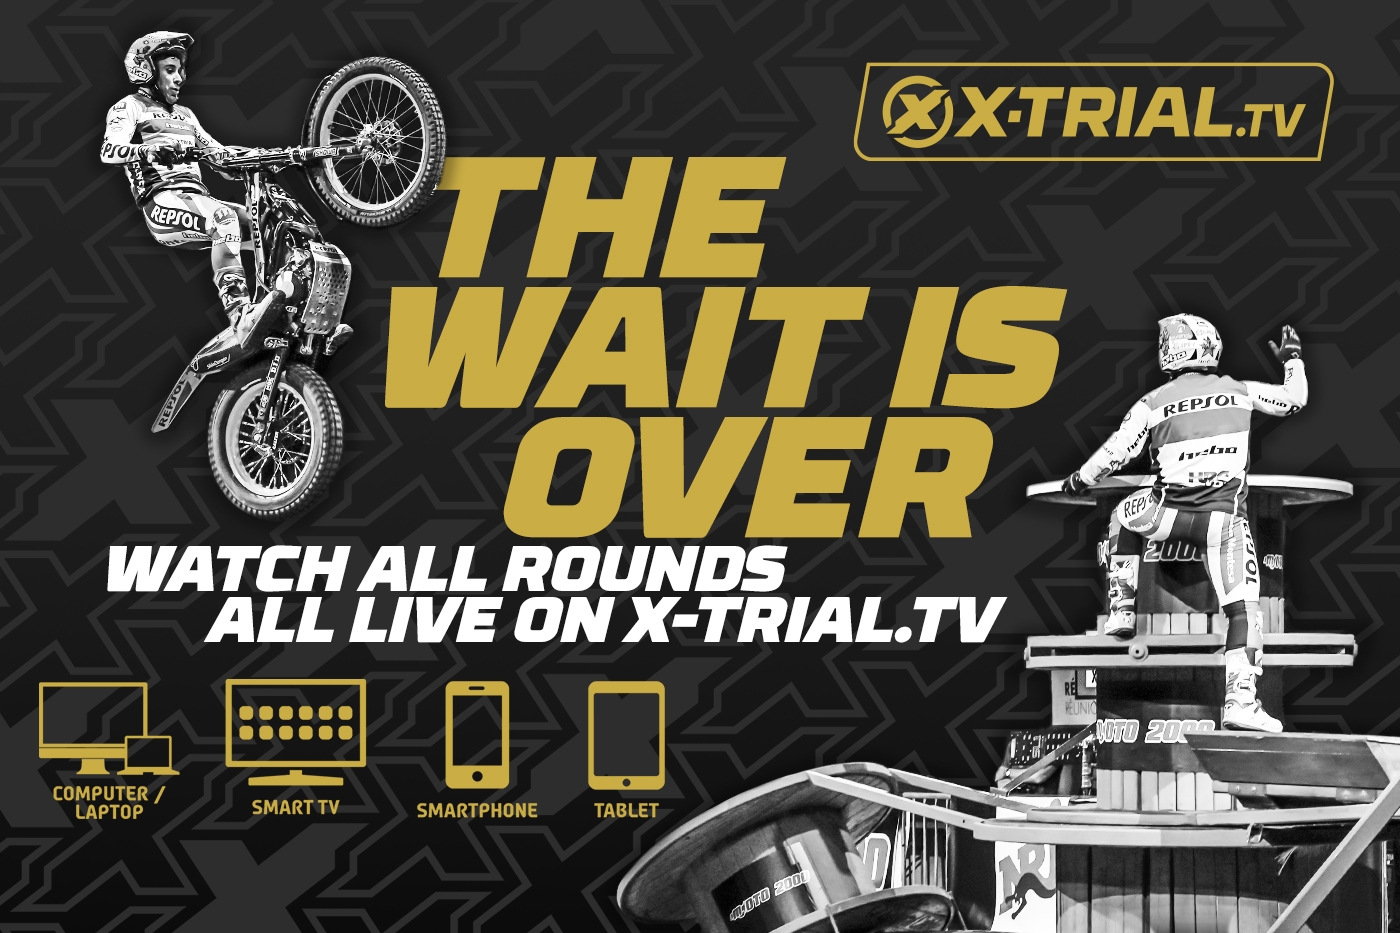 Suivez le Championnat du Monde FIM X-Trial sur X-Trial.tv